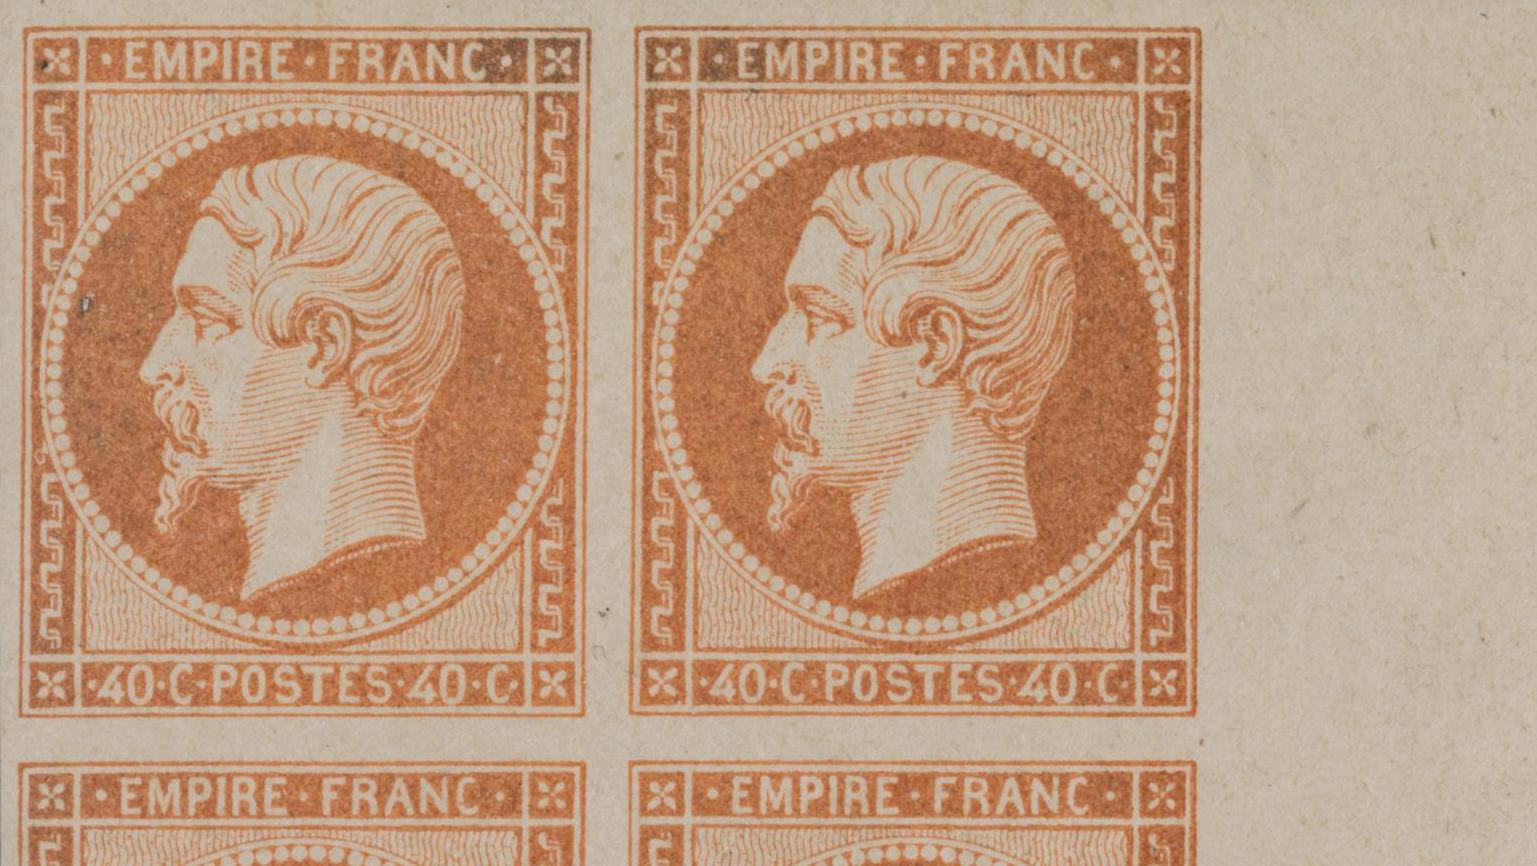   Des timbres impériaux